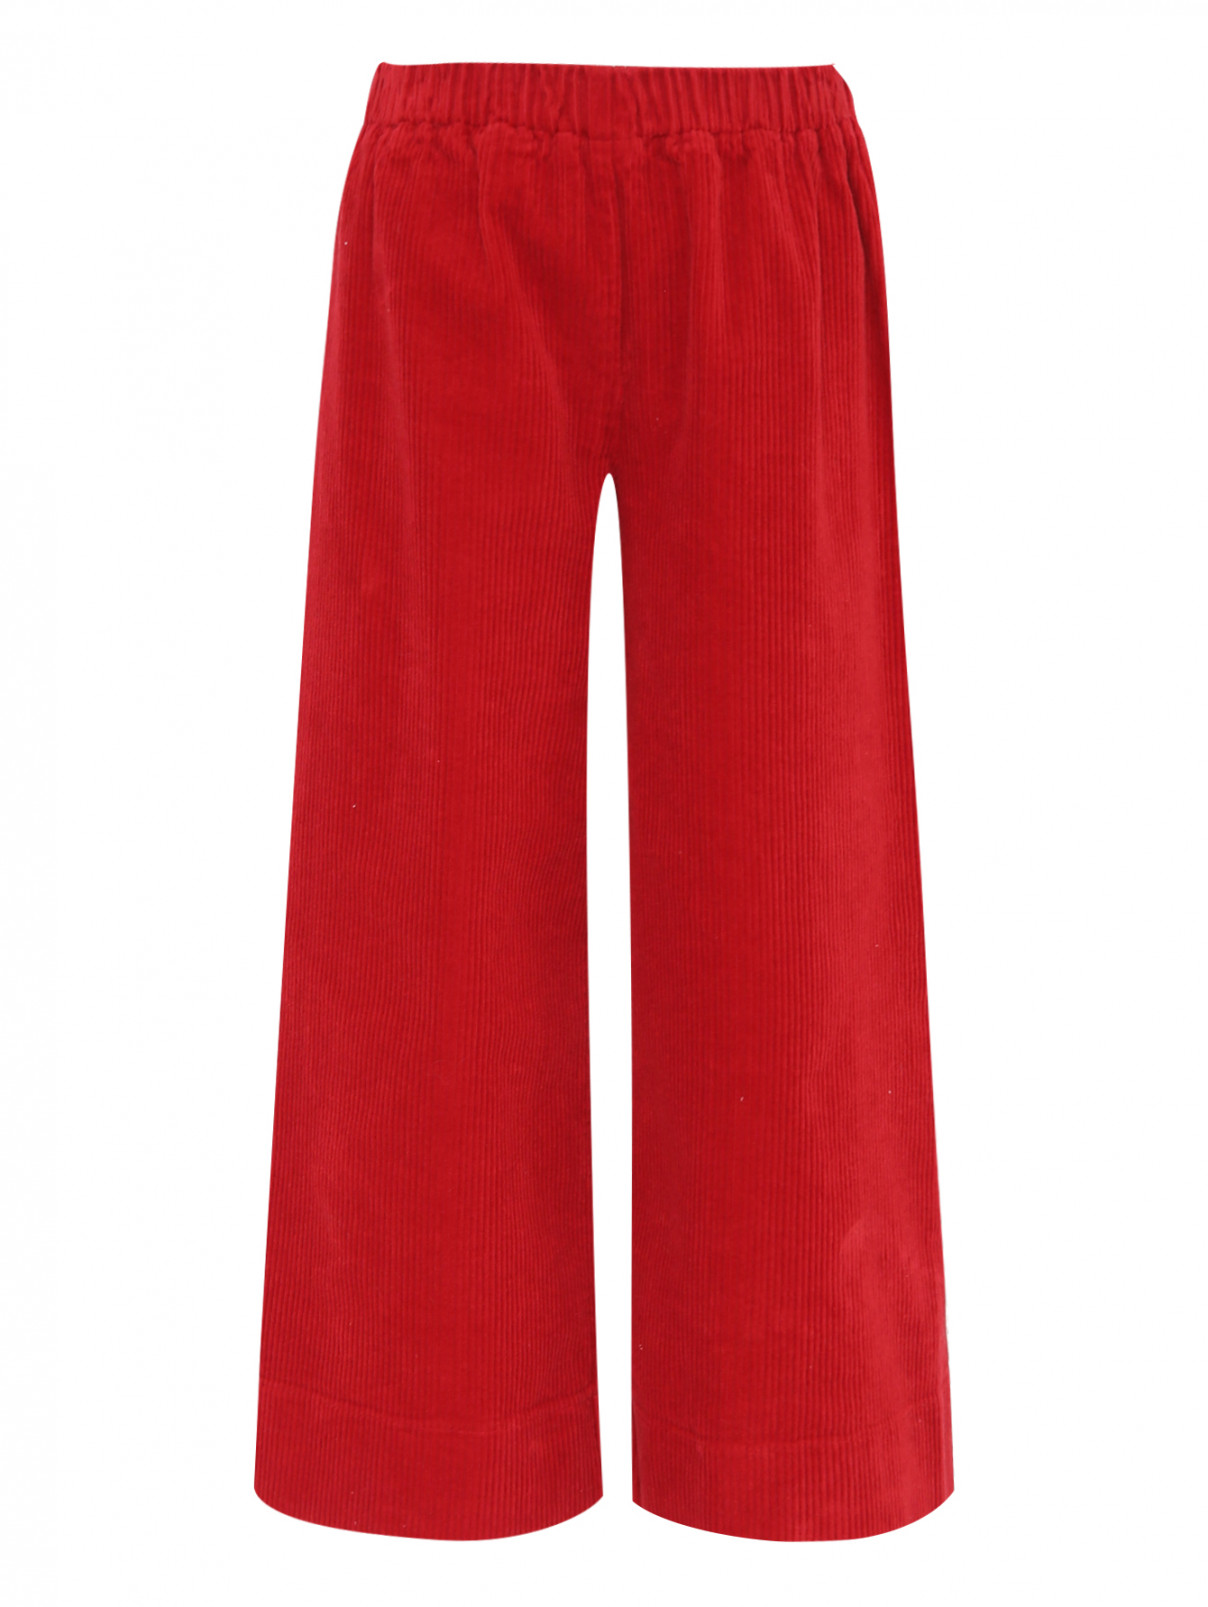 Вельветовые брюки на резинке Il Gufo  –  Общий вид  – Цвет:  Красный